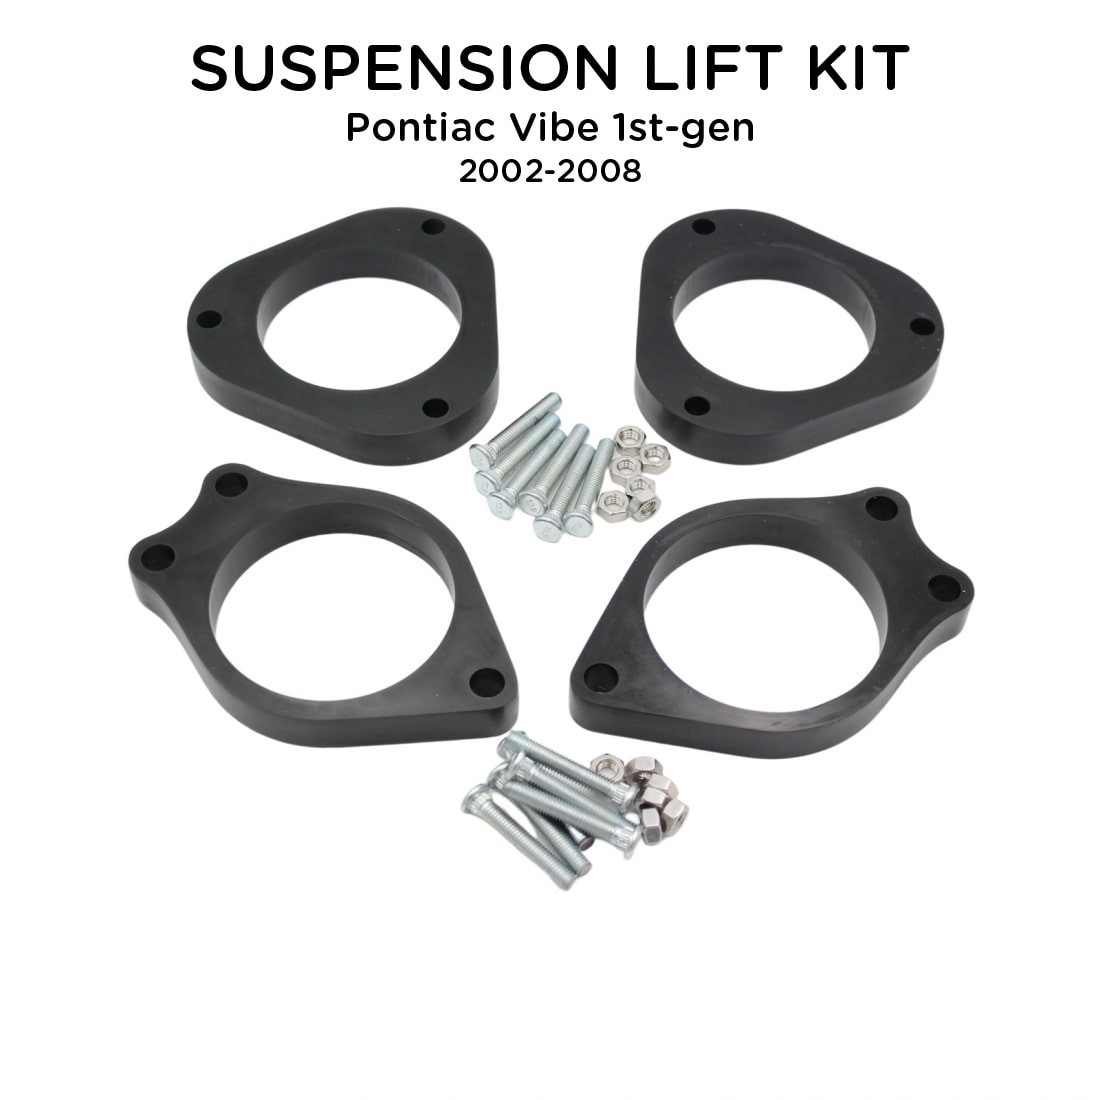 Suspension Lift Kit For Pontiac Vibe 2002-2008